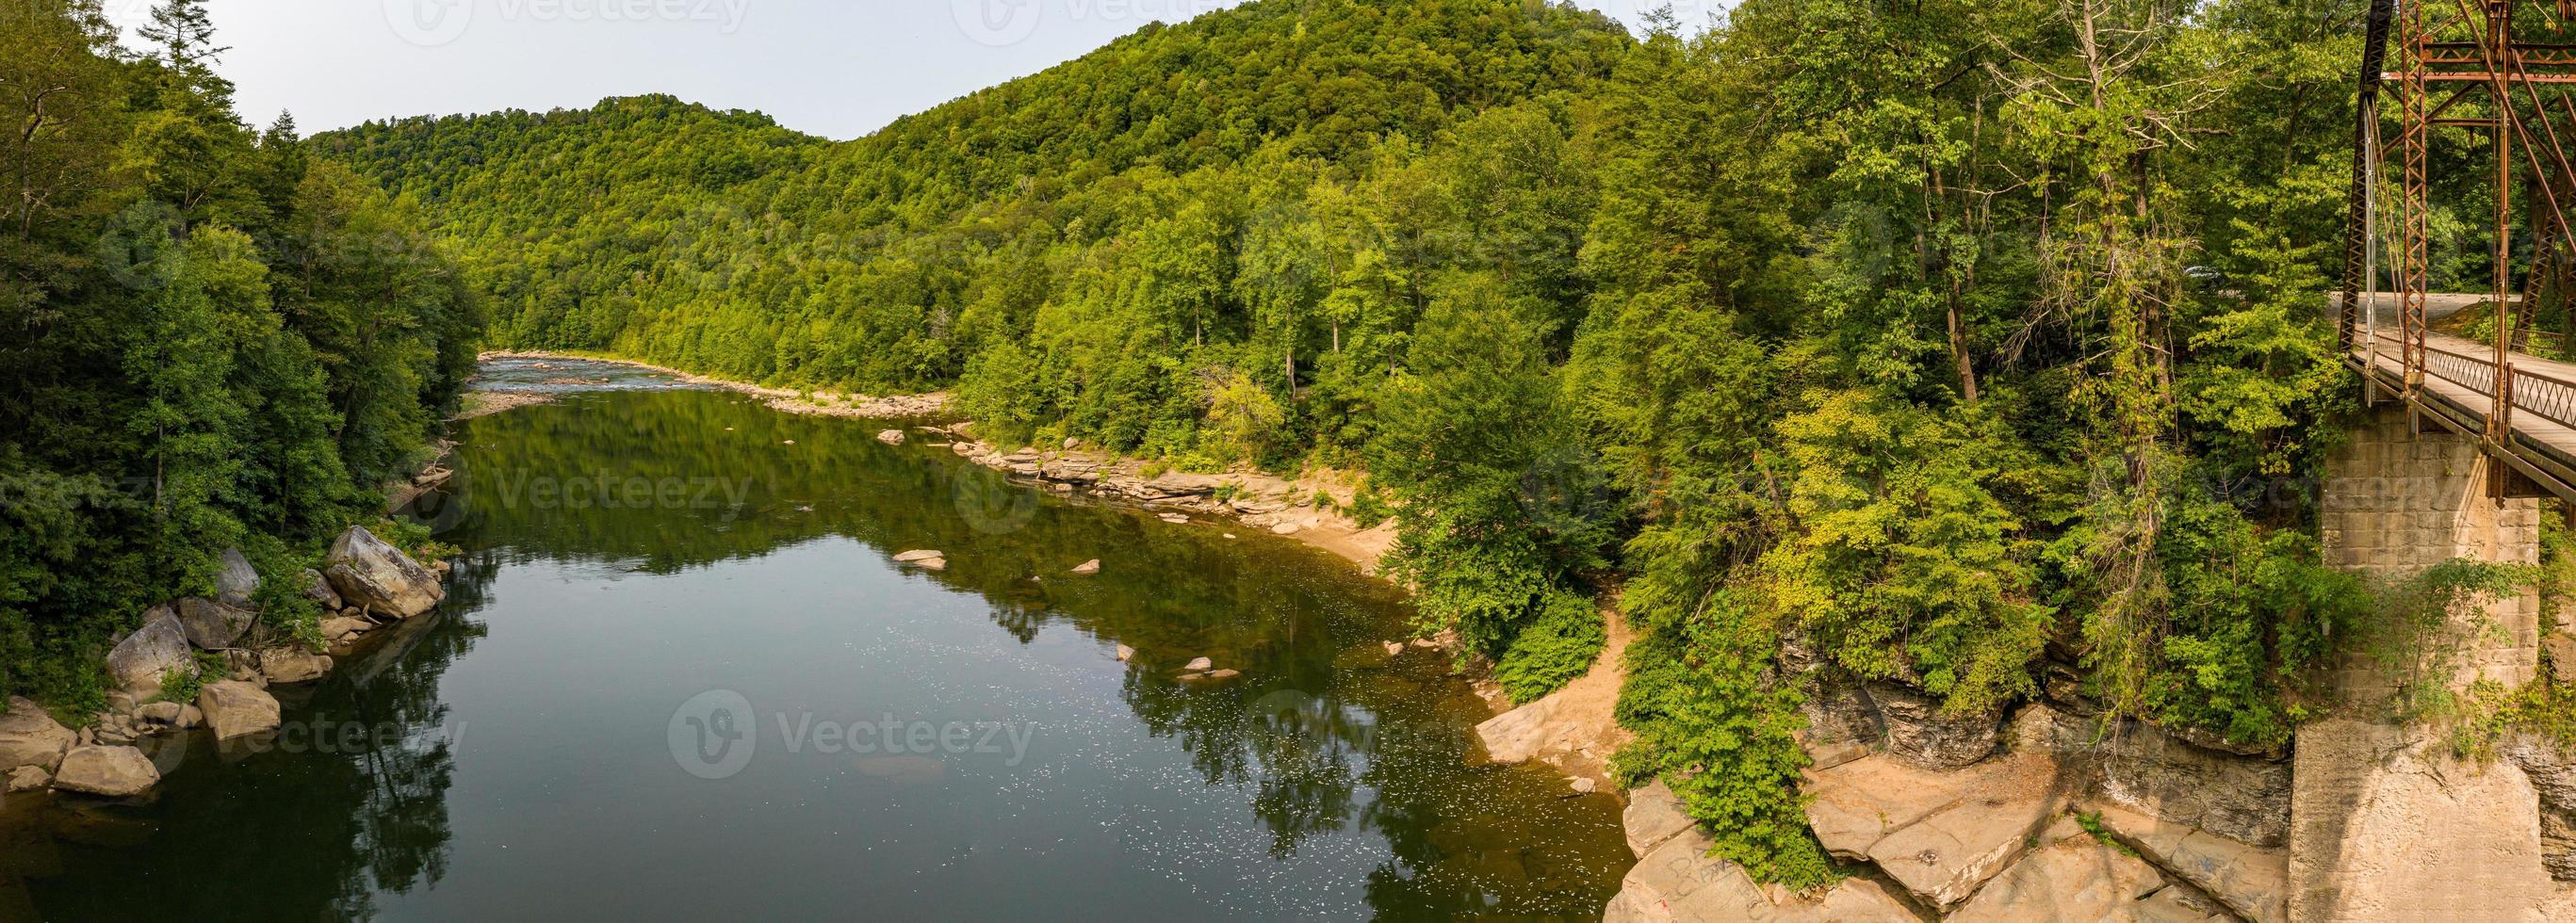 vue de drone sur la rivière cheat par le pont de jenkinsburg près de morgantown photo